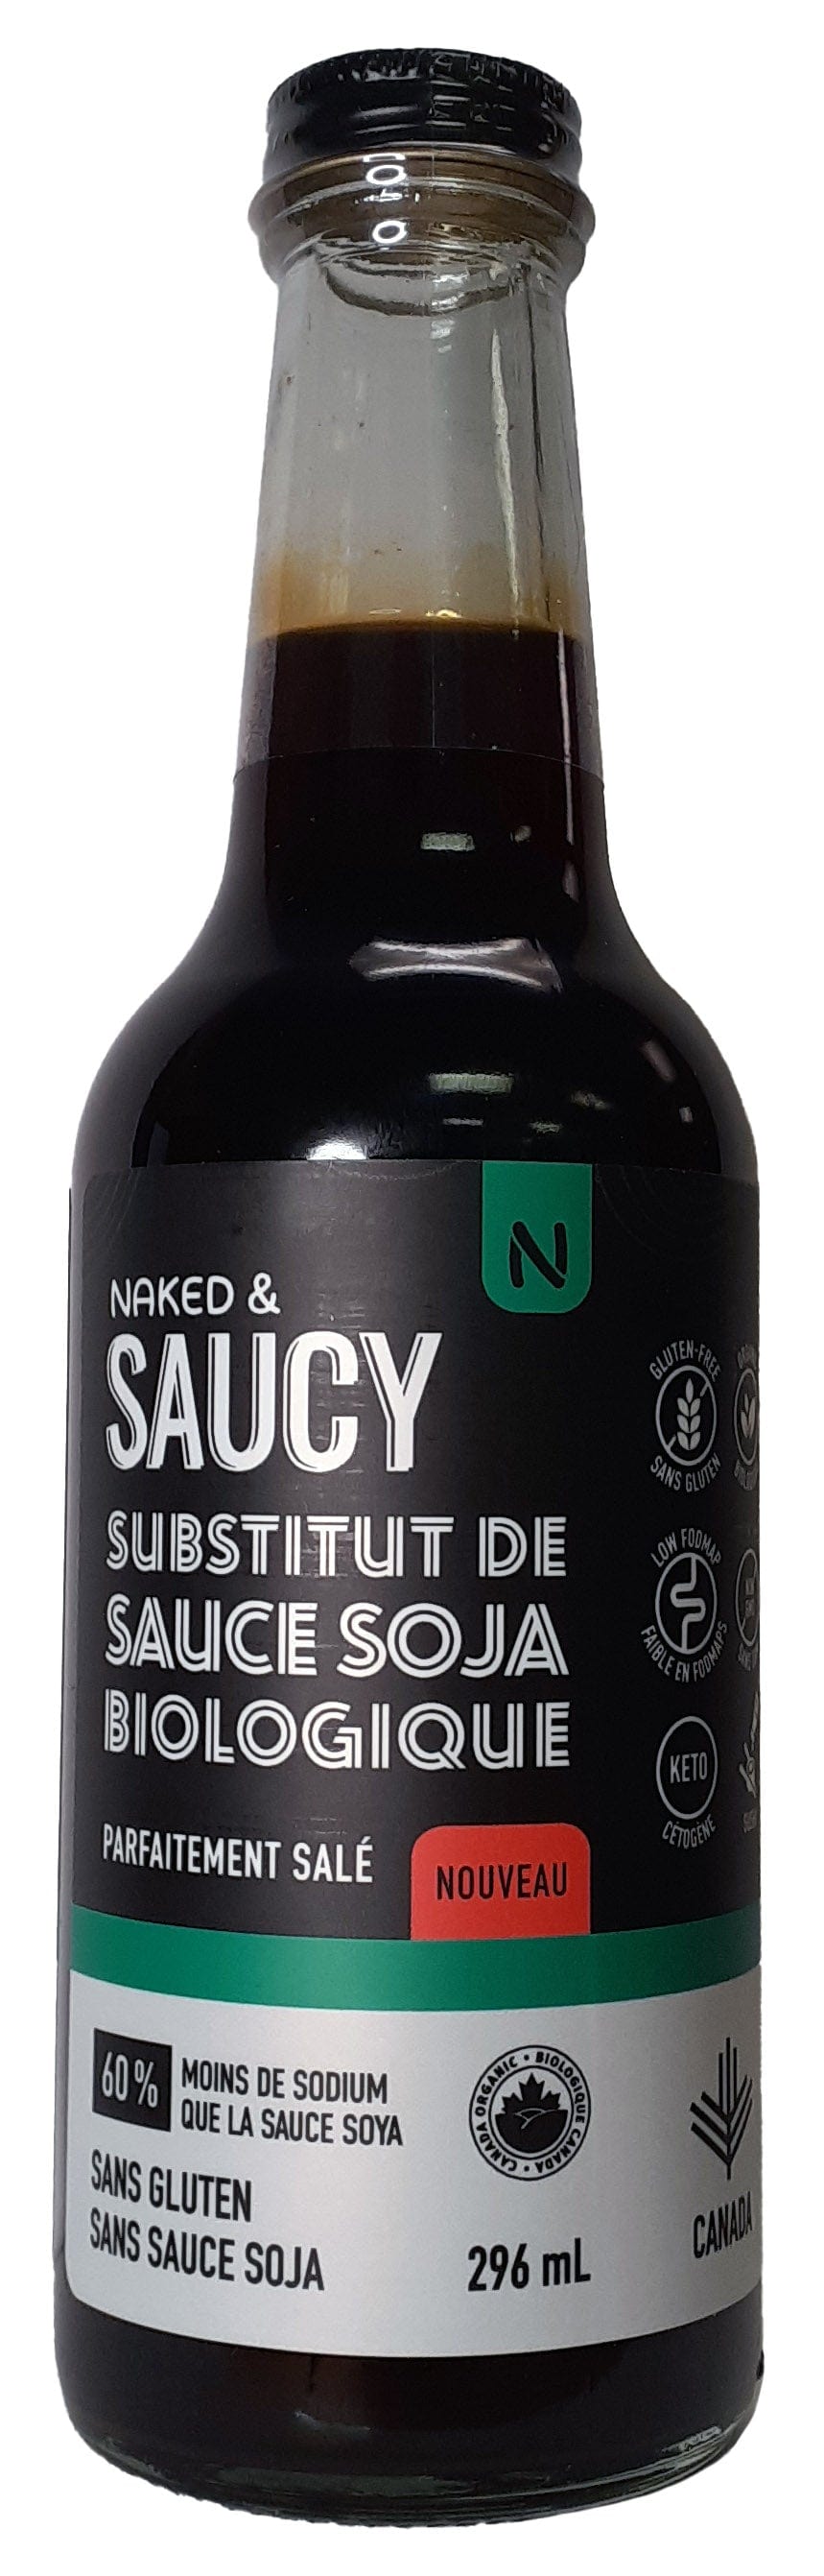 NAKED AND SAUCY Épicerie Substitut de sauce soja salé bio 296ml